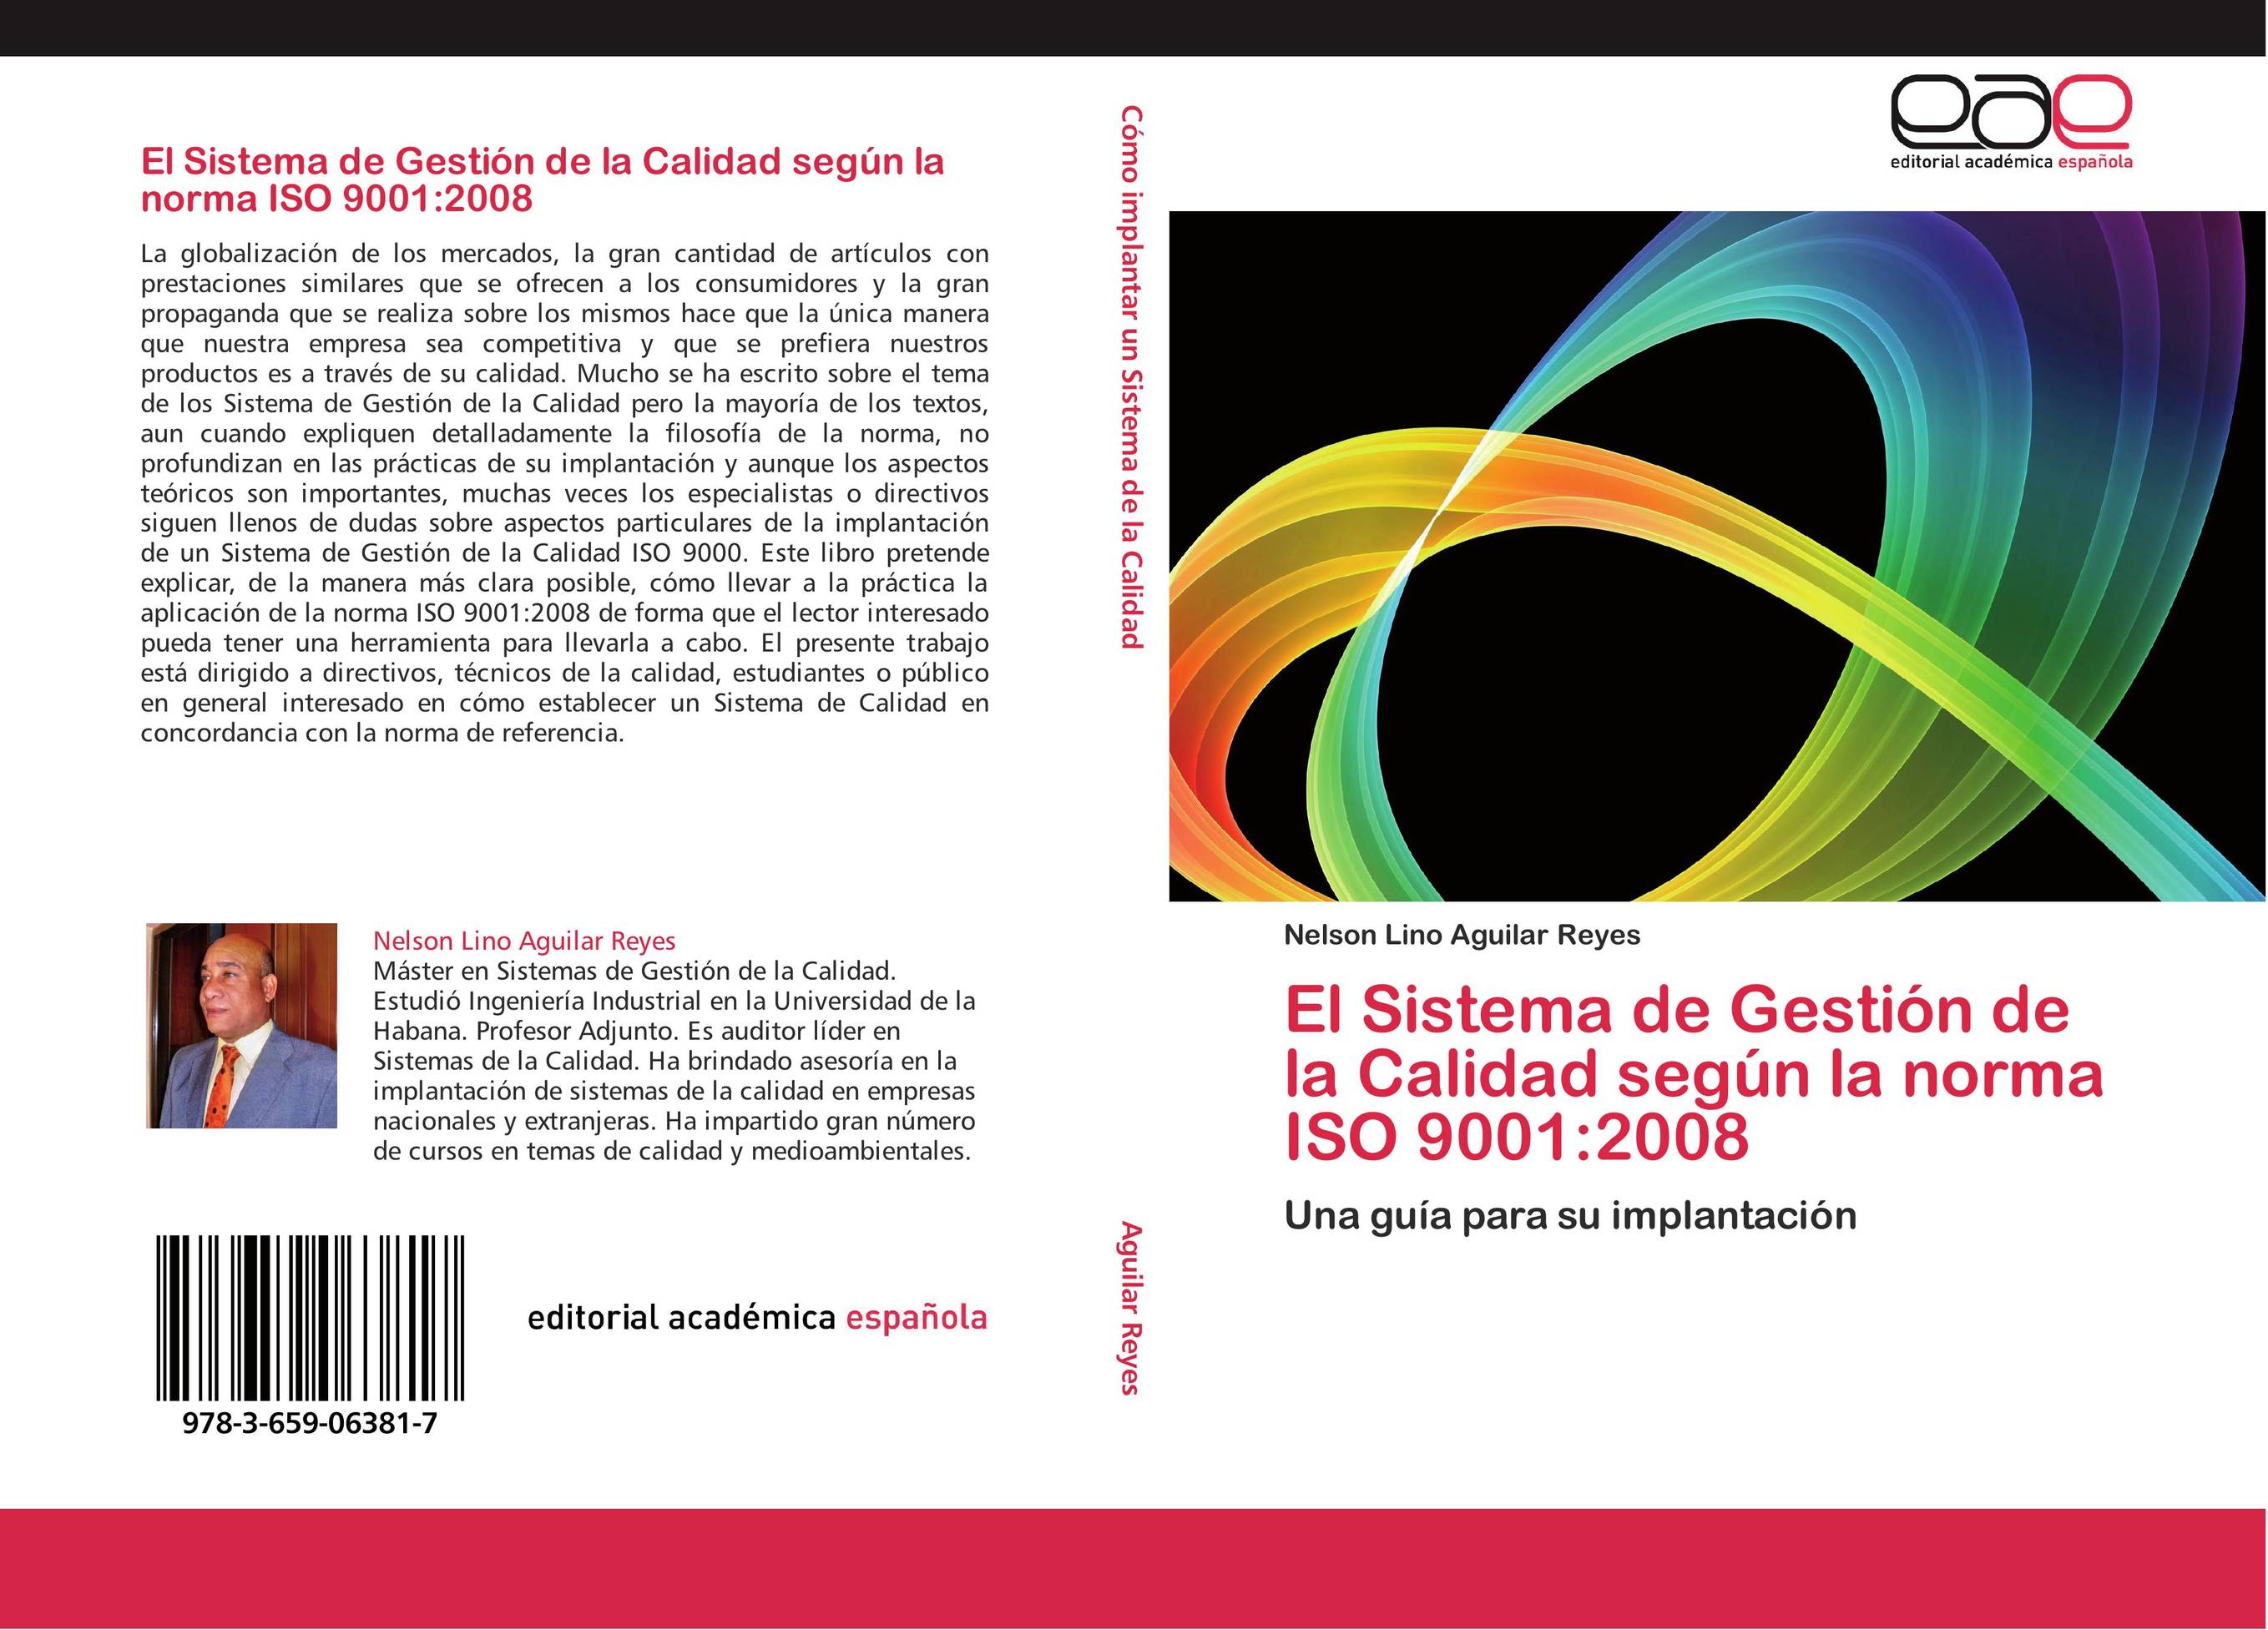 El Sistema de Gestión de la Calidad según la norma ISO 9001:2008